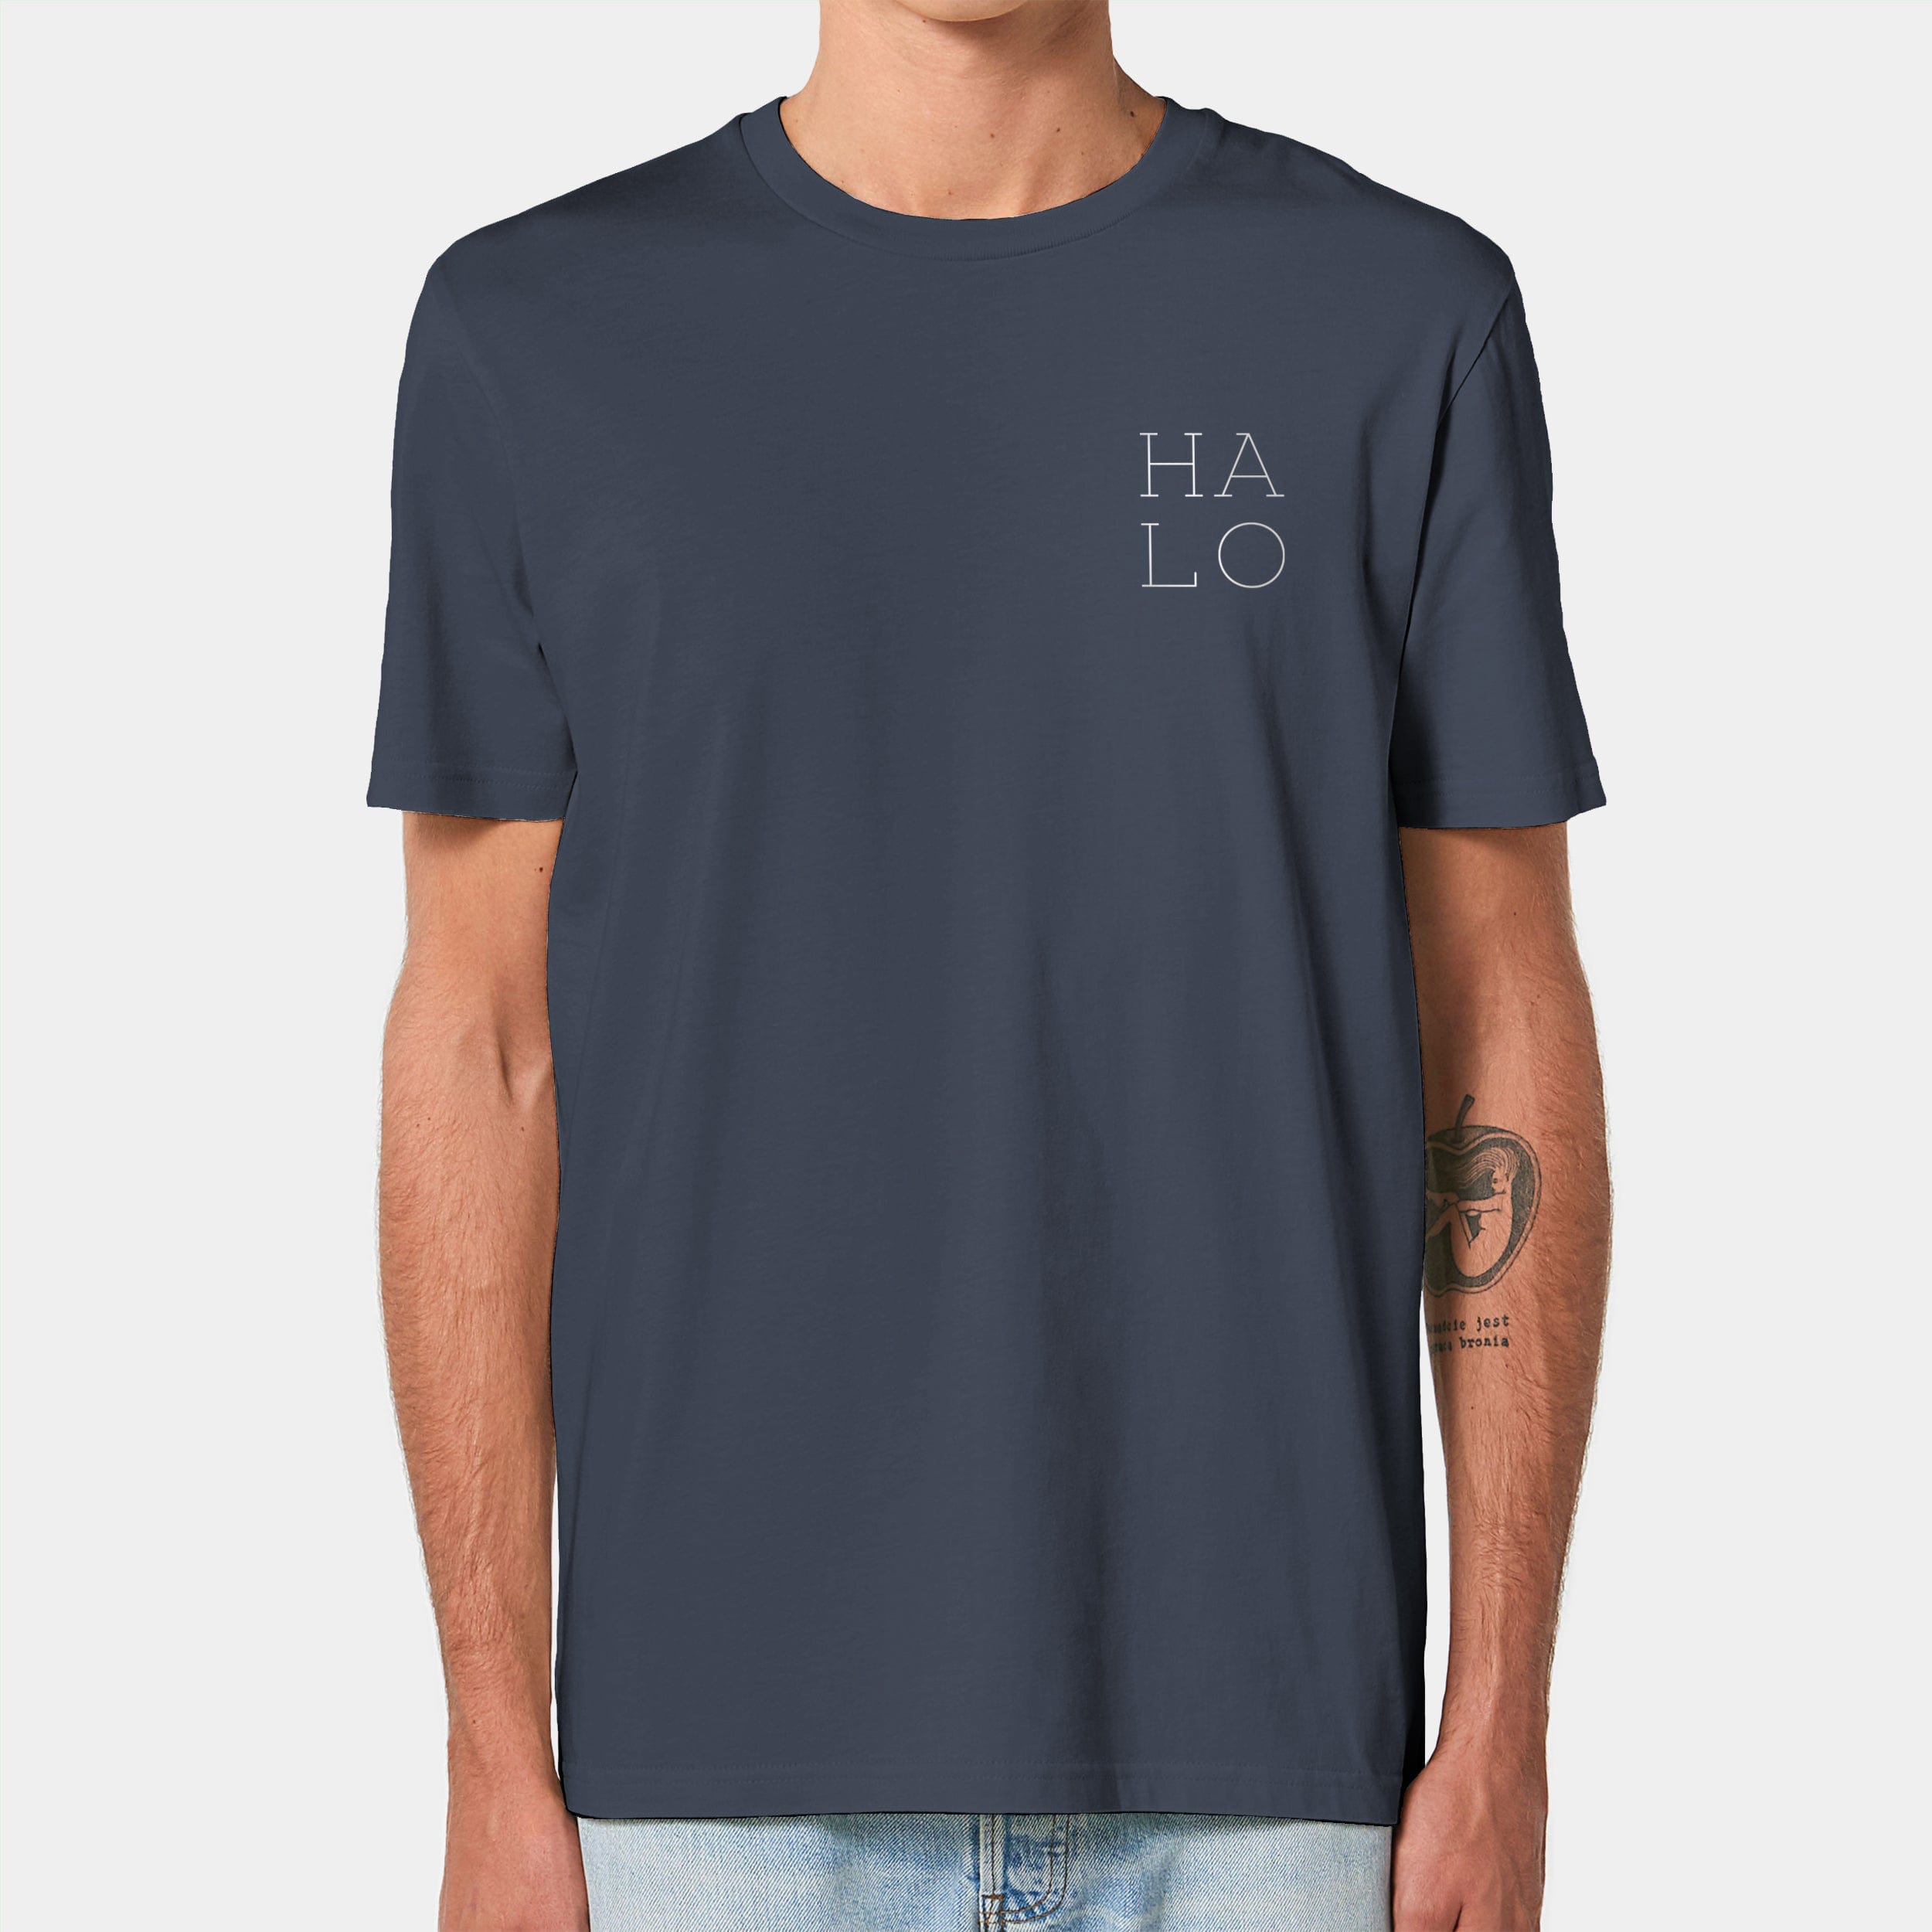 HEITER & LÄSSIG T-Shirt "HALO" XXS / india ink grey - aus nachhaltiger und fairer Produktion